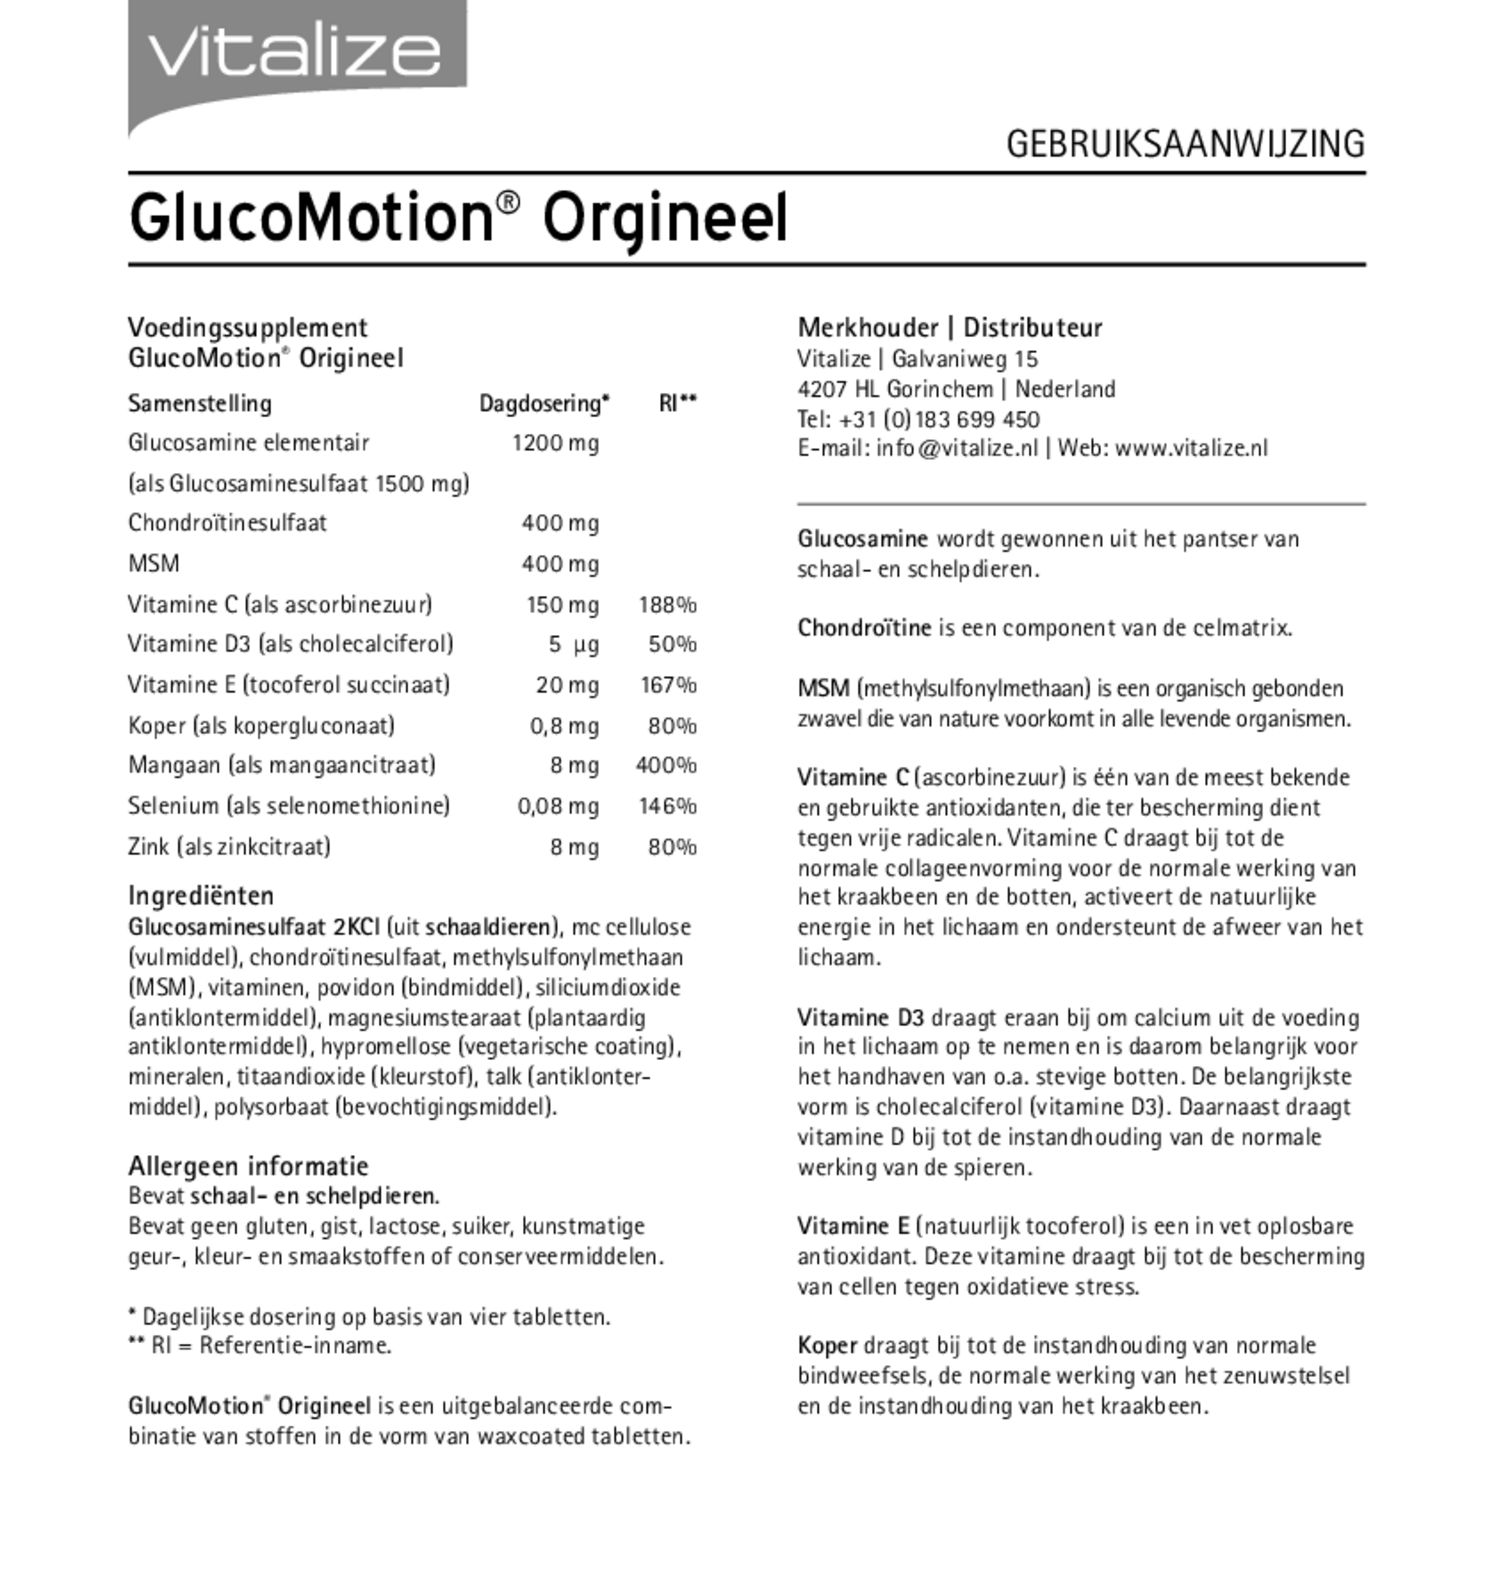 GlucoMotion Origineel Tabletten afbeelding van document #1, gebruiksaanwijzing